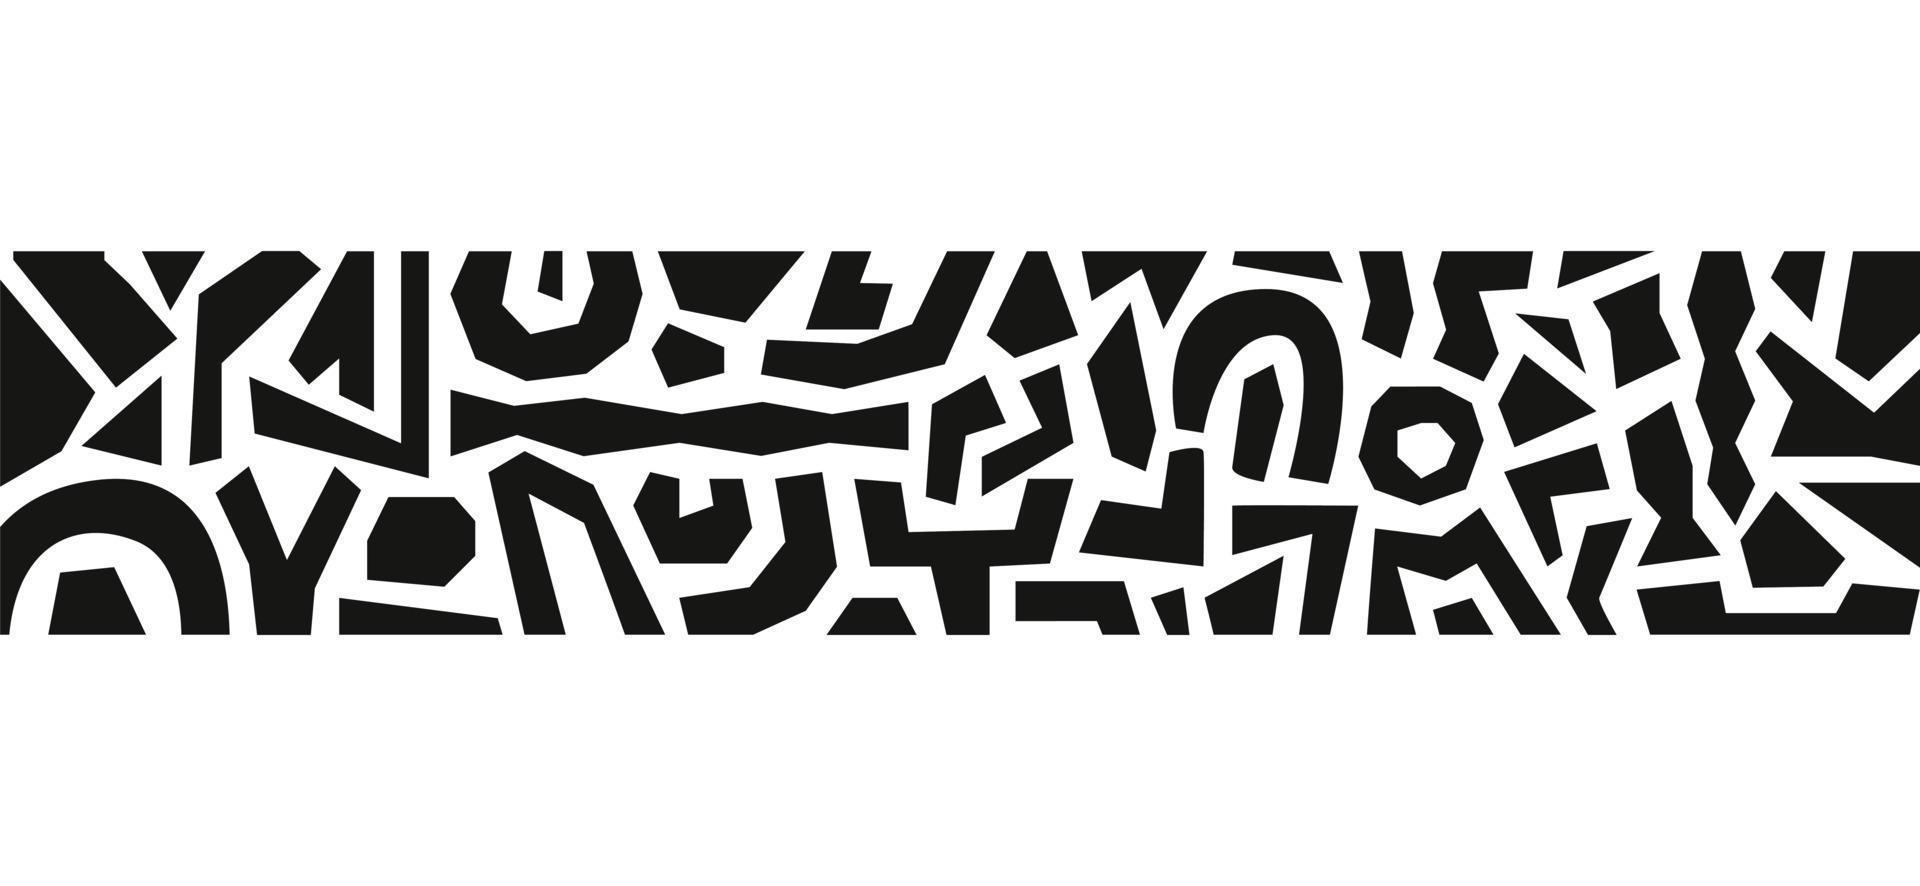 bordo astratto moderno con varie forme geometriche nere isolate su sfondo bianco. modello orizzontale disegnato a mano minimalista. disegno vettoriale